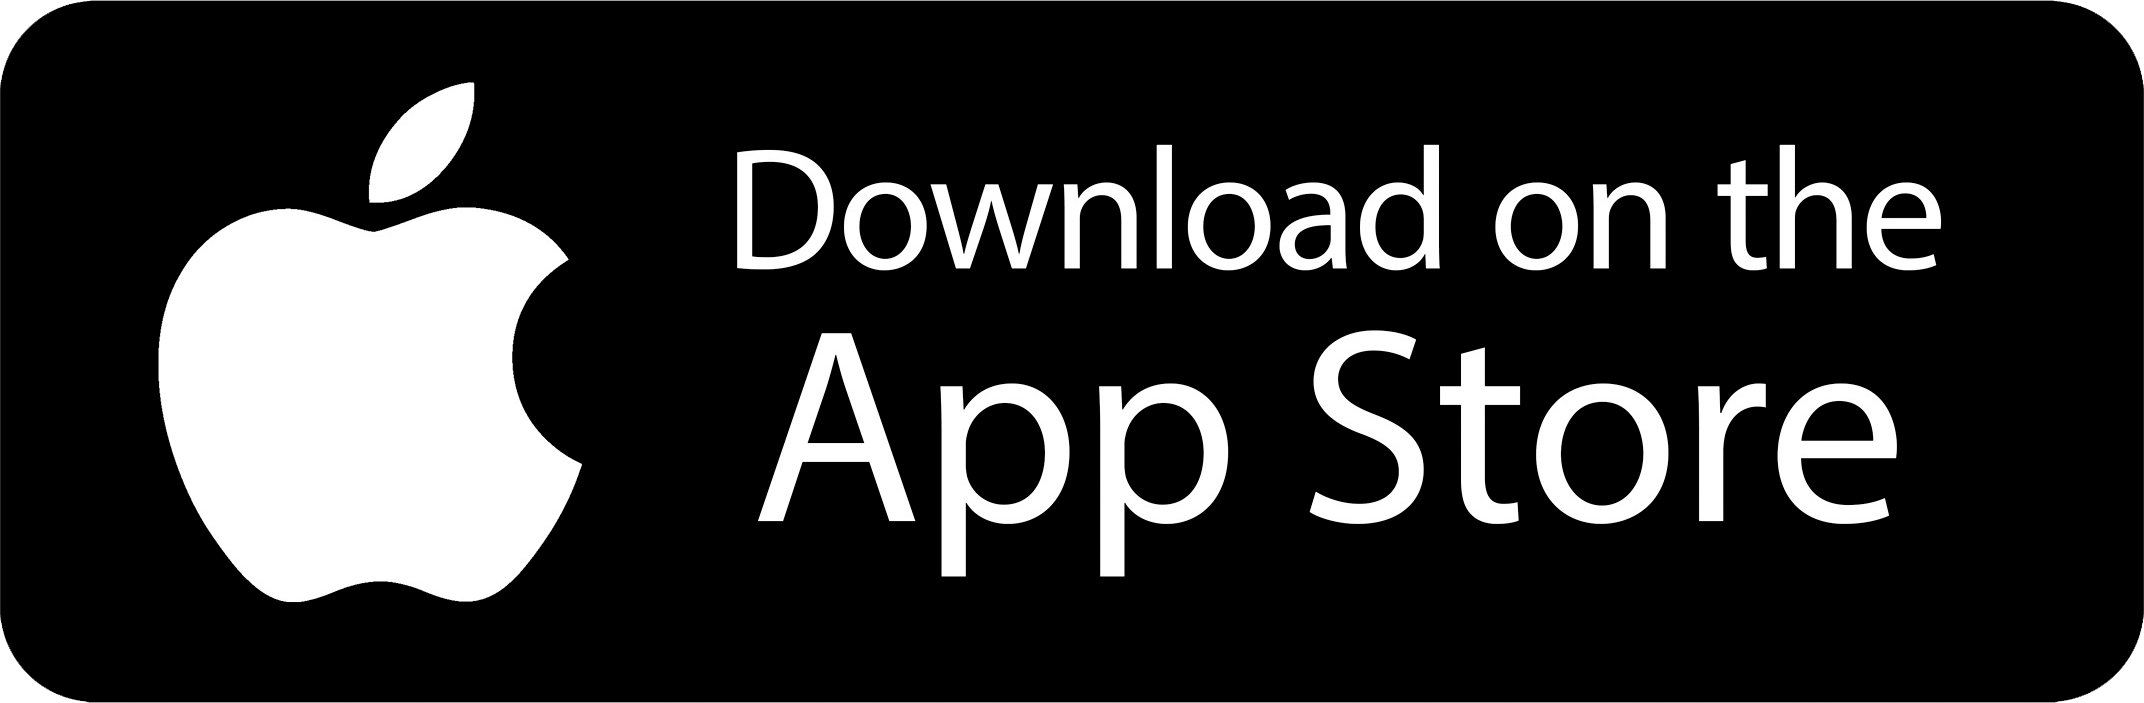 App Store Button transparent - Text 2 Floss